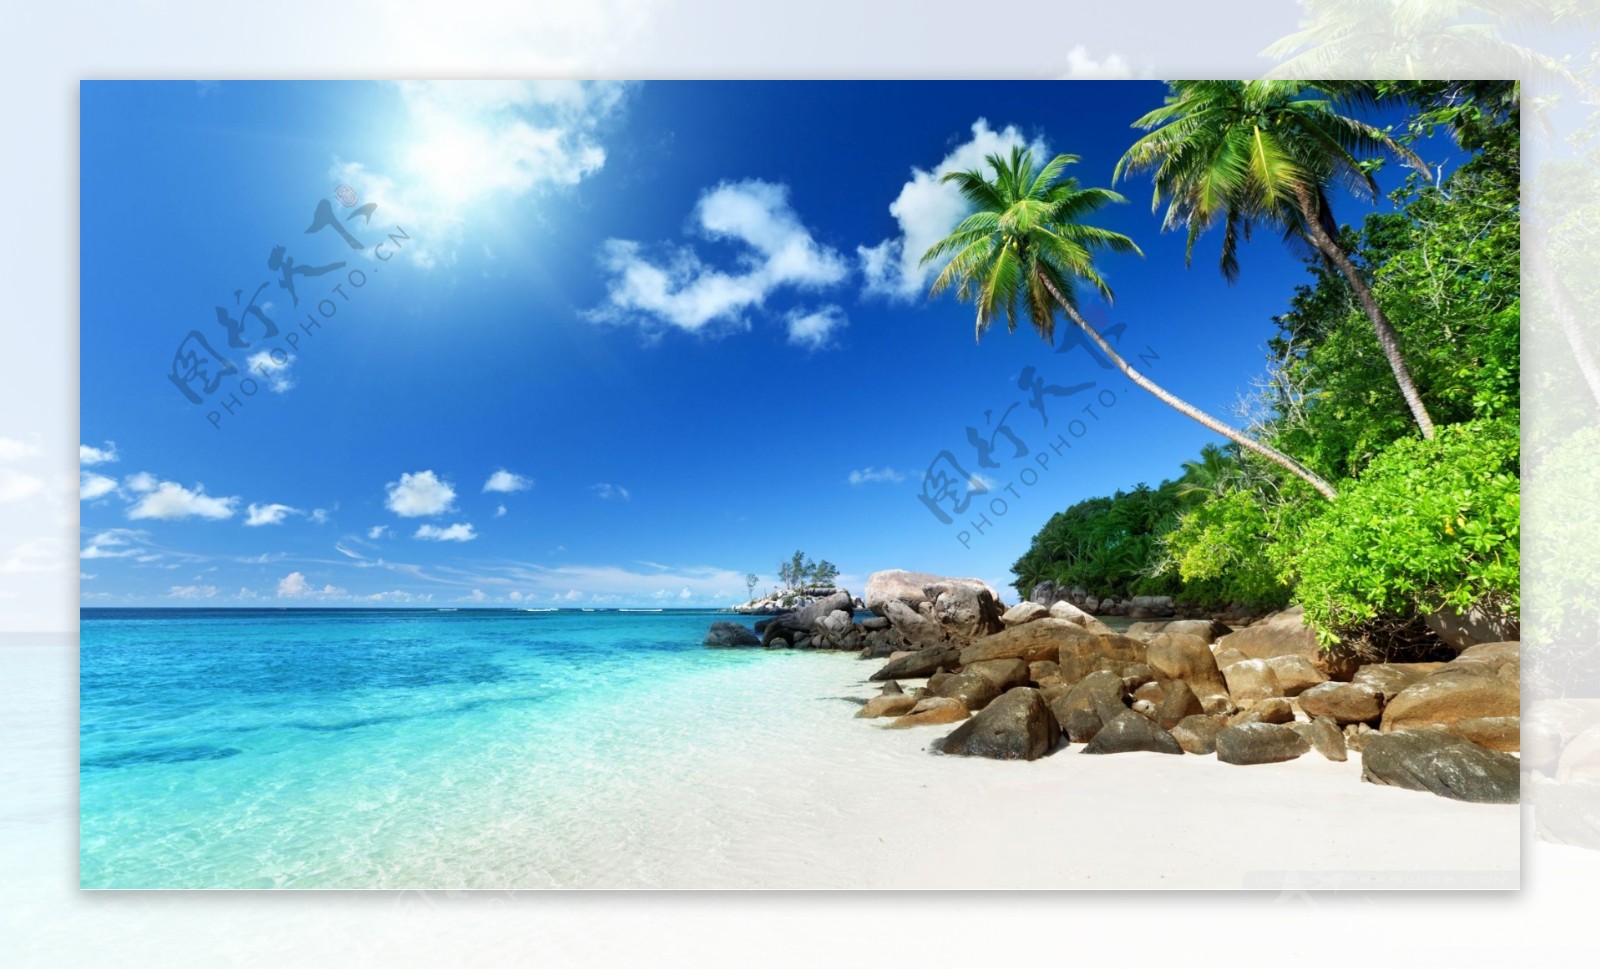 2024老码头阳光沙滩游玩攻略,阳光、沙滩、海浪、仙人掌还...【去哪儿攻略】